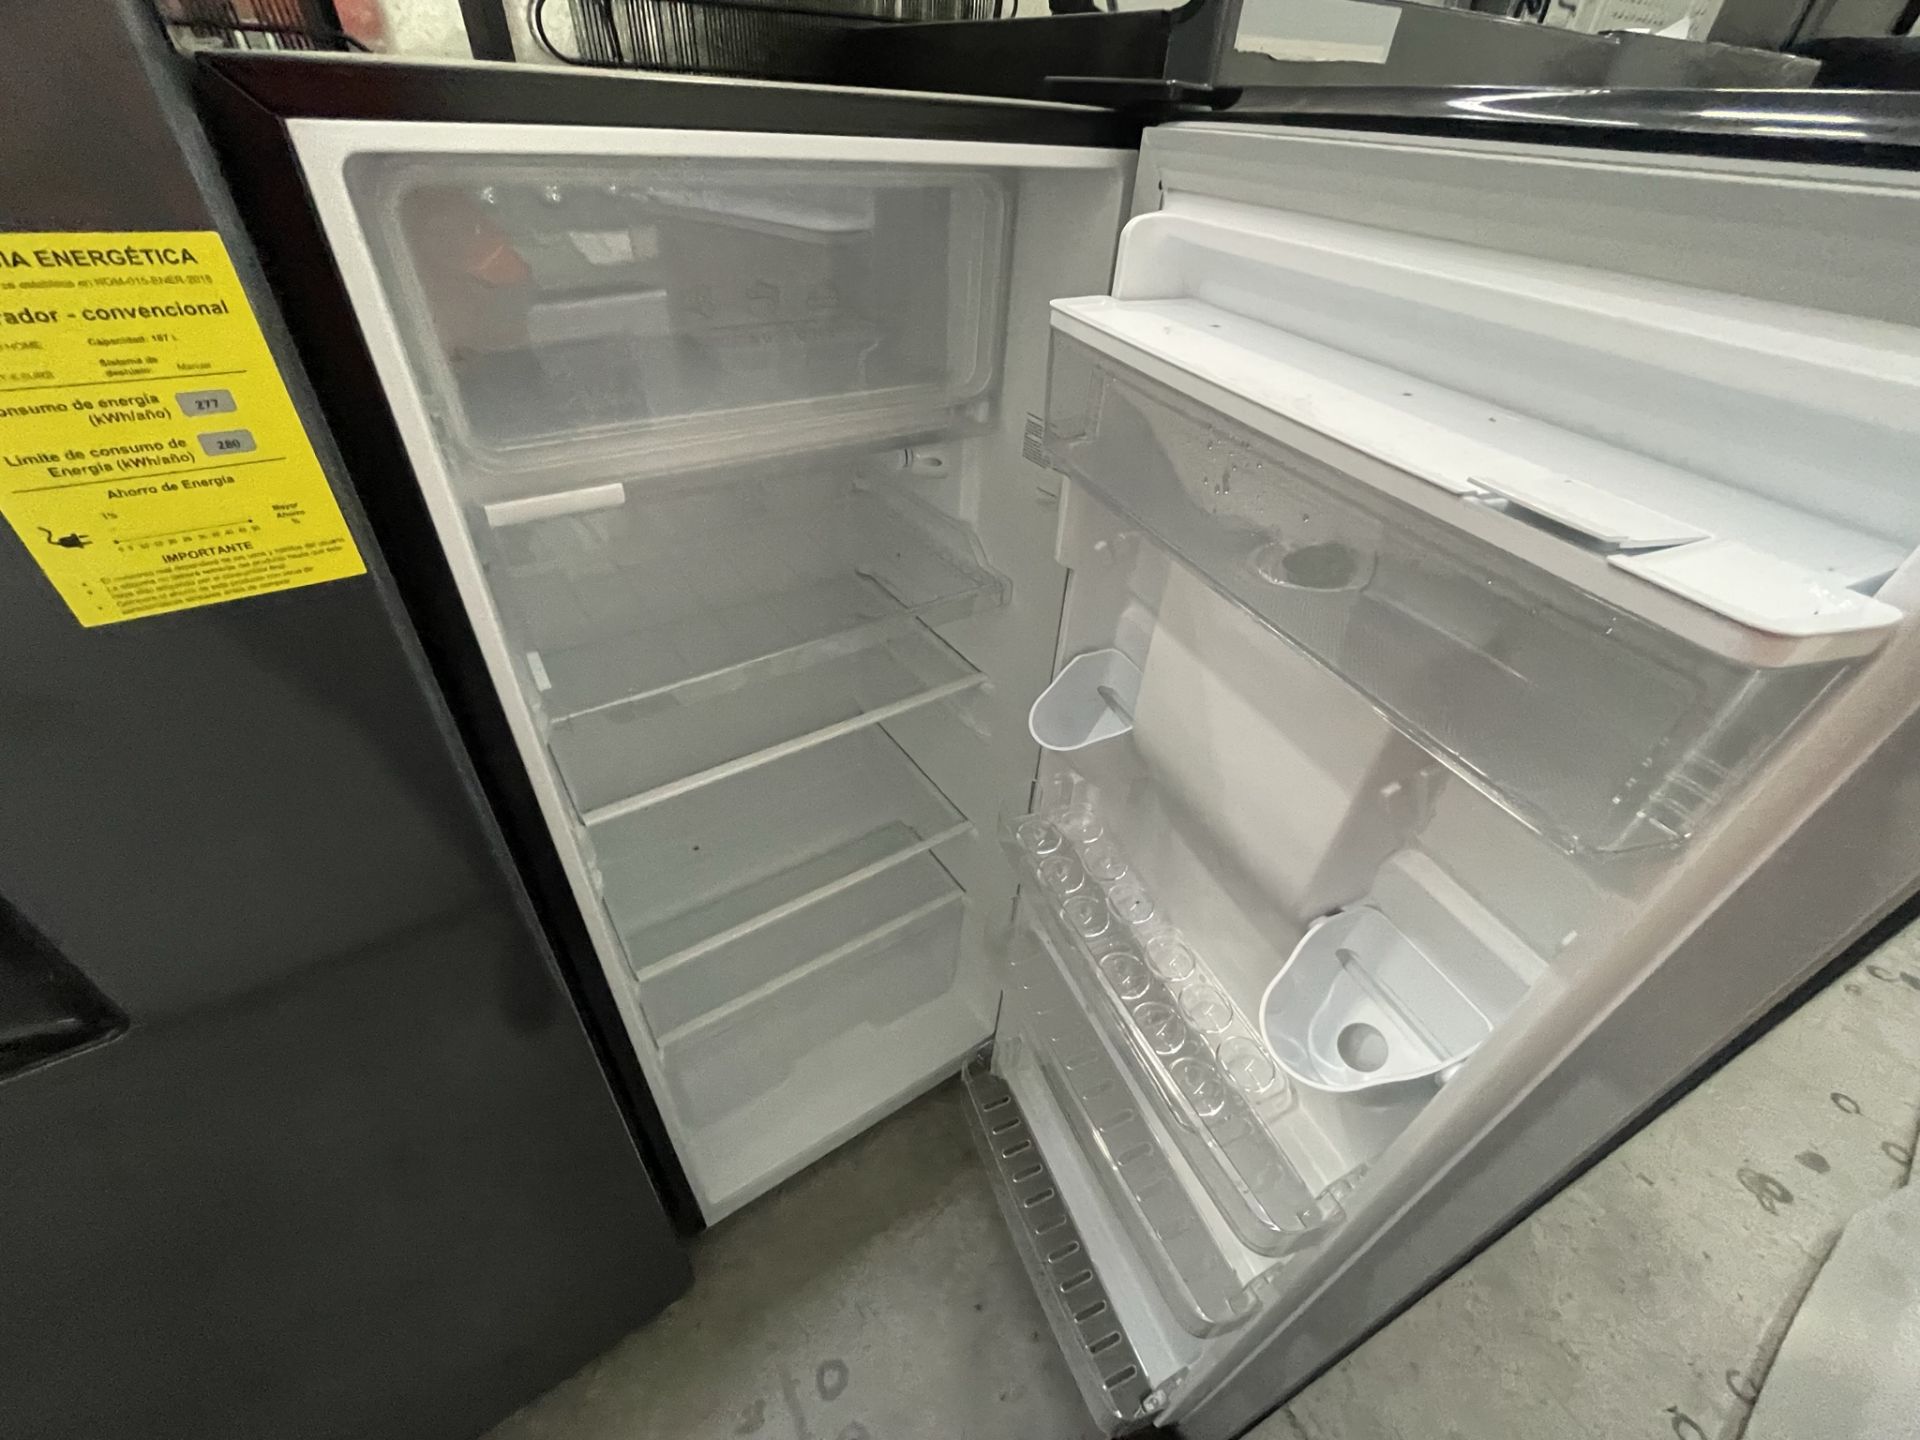 Lote de 2 Refrigeradores contiene: 1 Refrigerador Marca OSTER, Modelo OSSBSME20SSEVI, Serie N/D, Col - Image 21 of 23